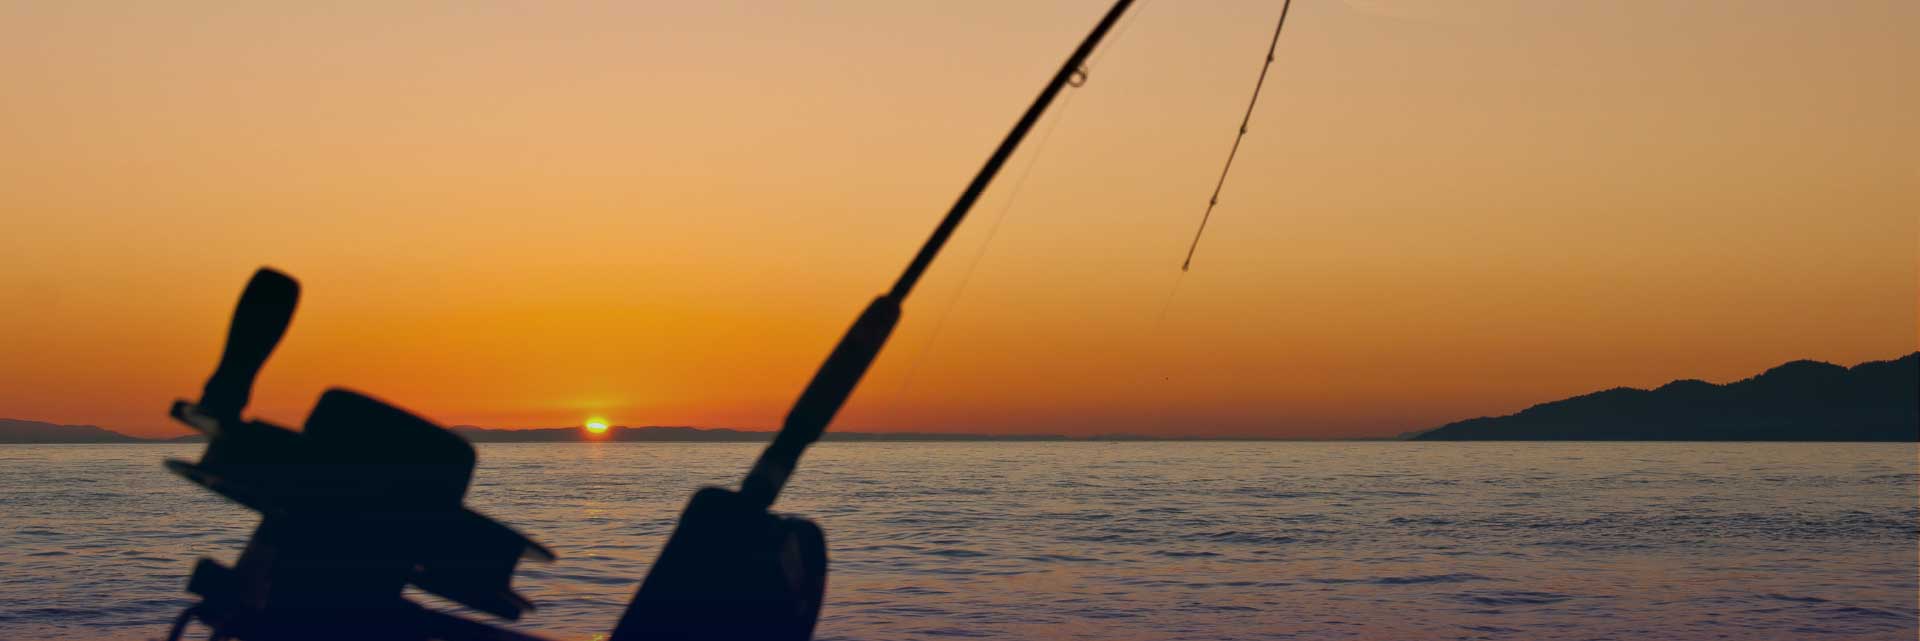 Umhlanga Ski-Boat Club Rules_fishing rod and sunset